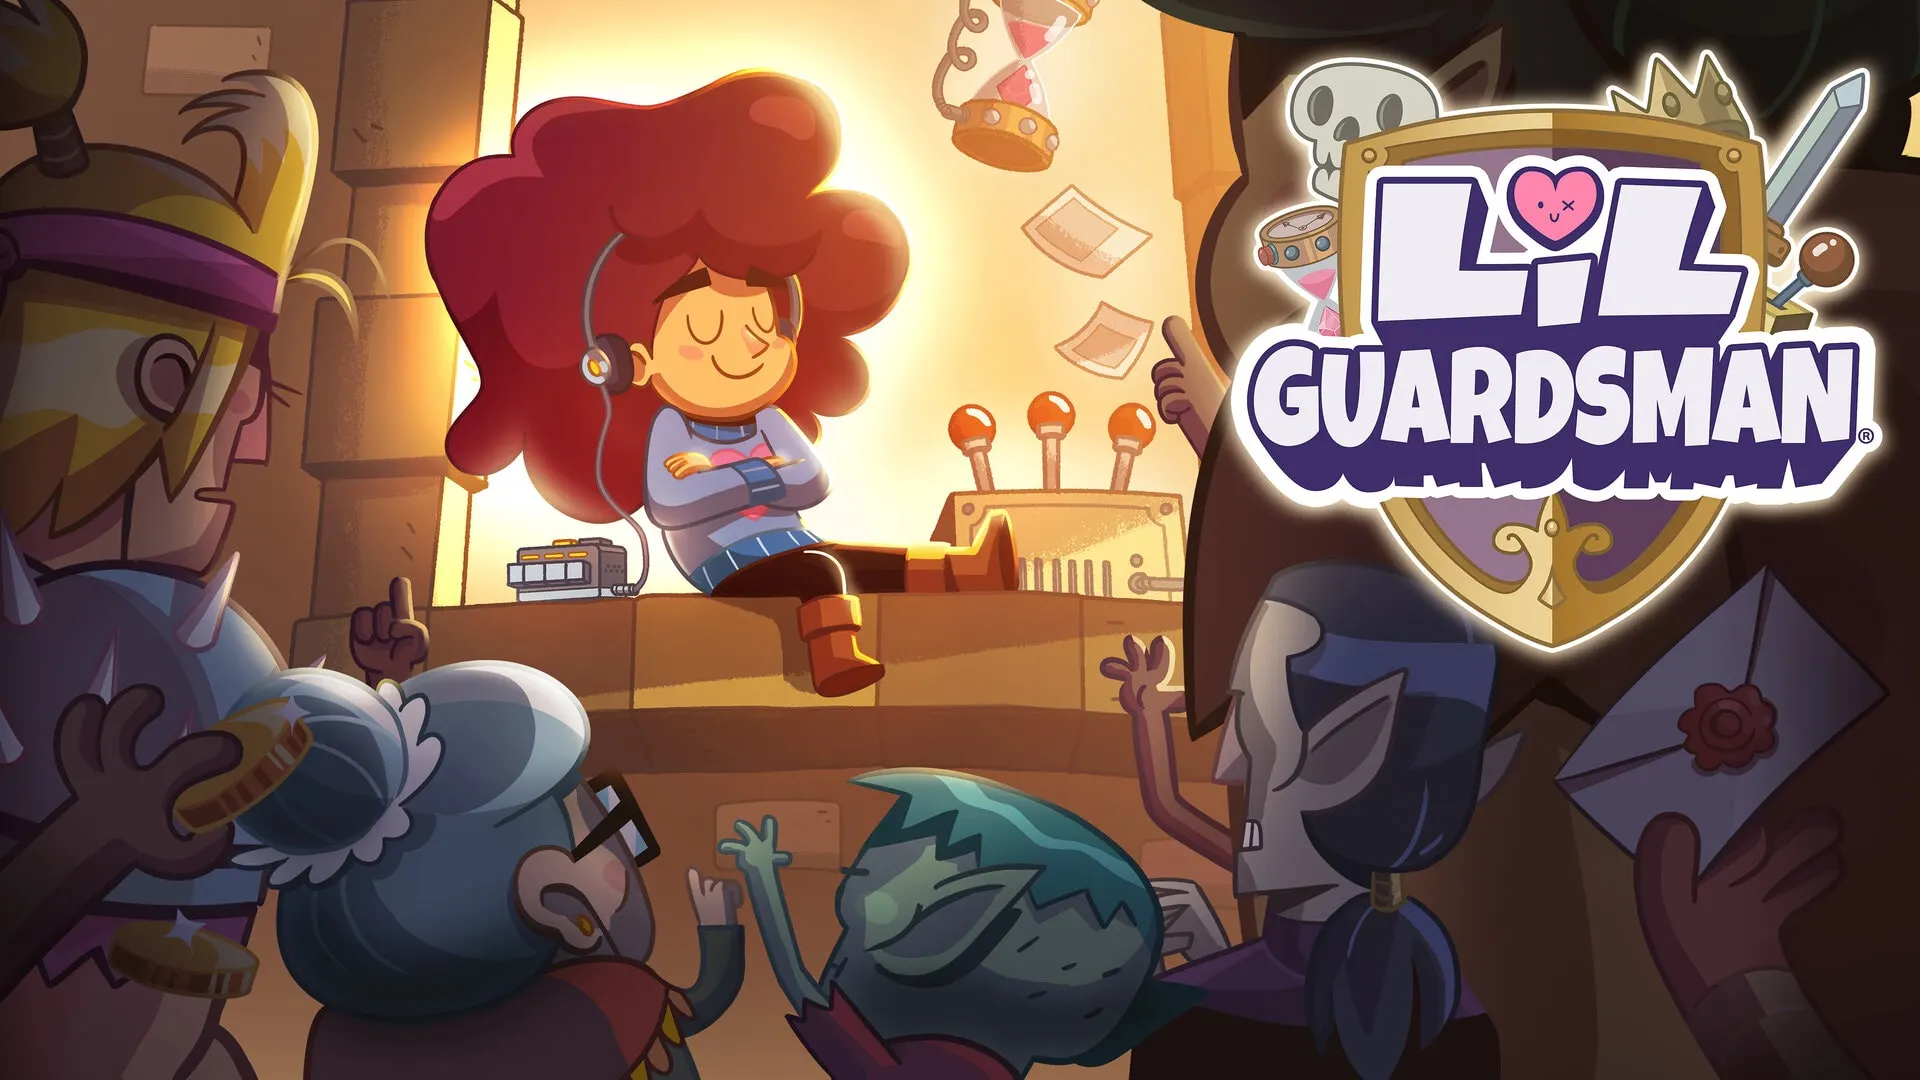 Lil’ Guardsman RECENSIONE | Controllore di frontiera in un regno fantasy cartoonesco